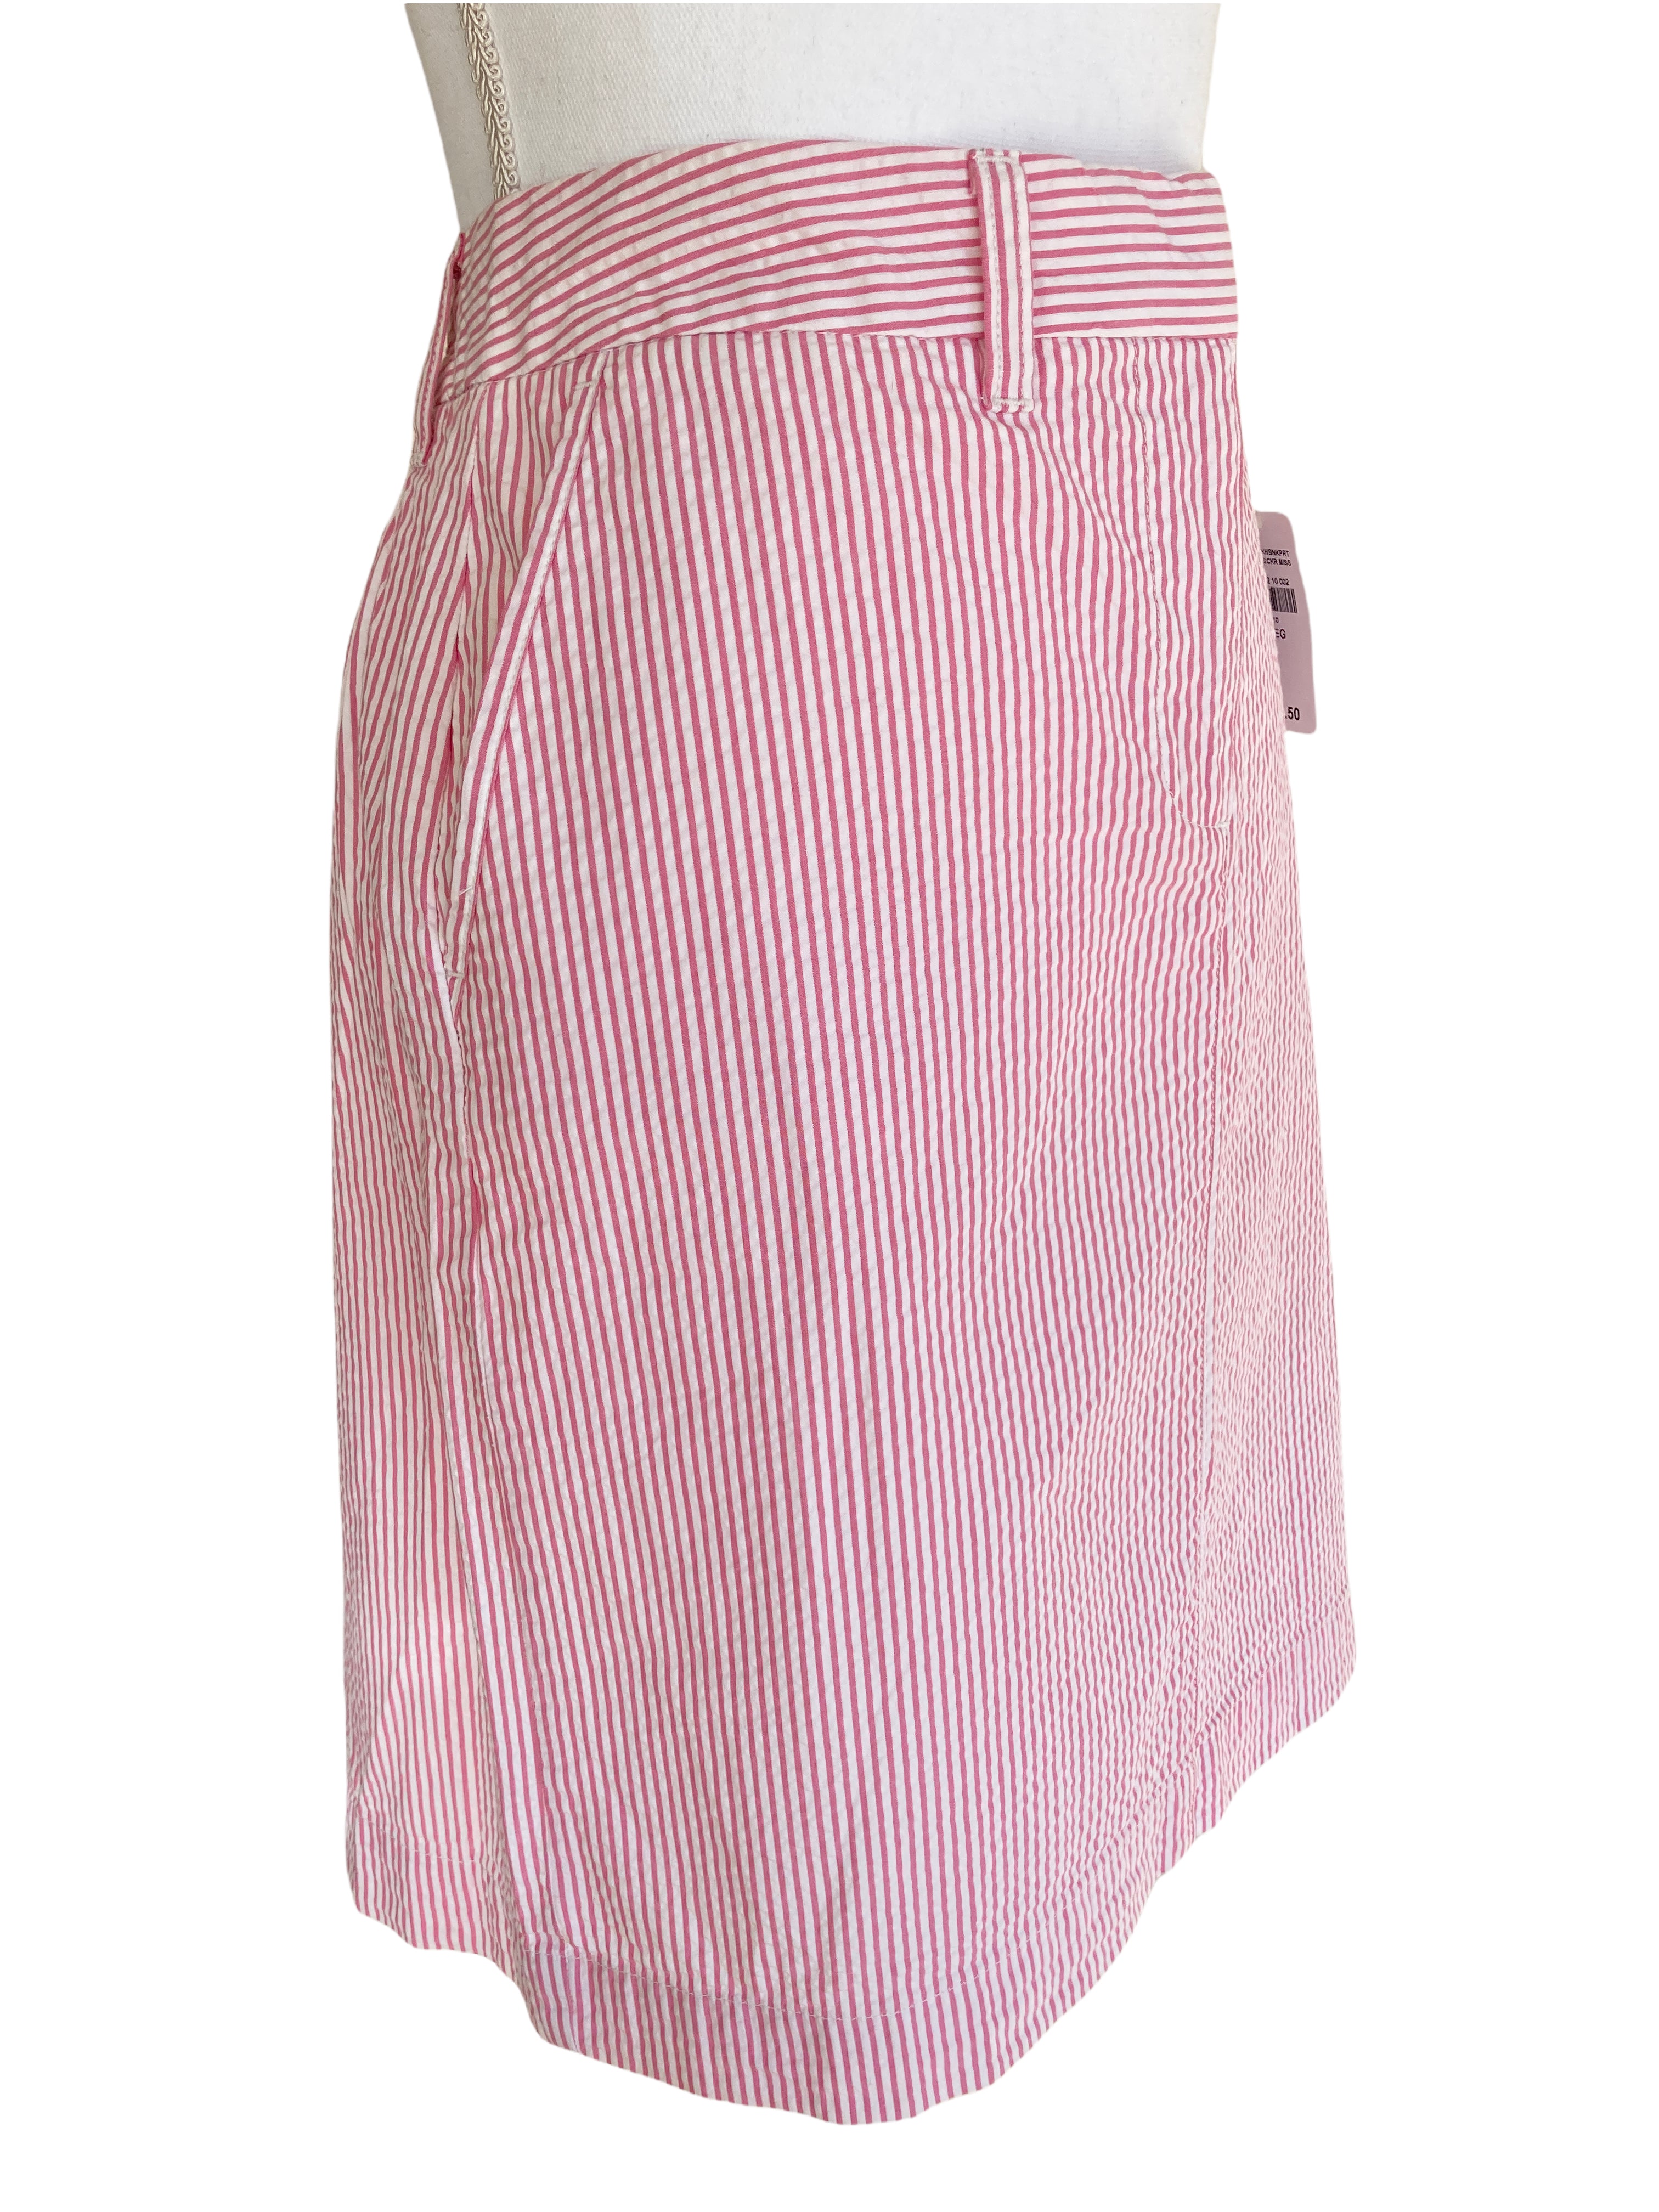 L.L. Bean Pink Seersucker Skirt, 10